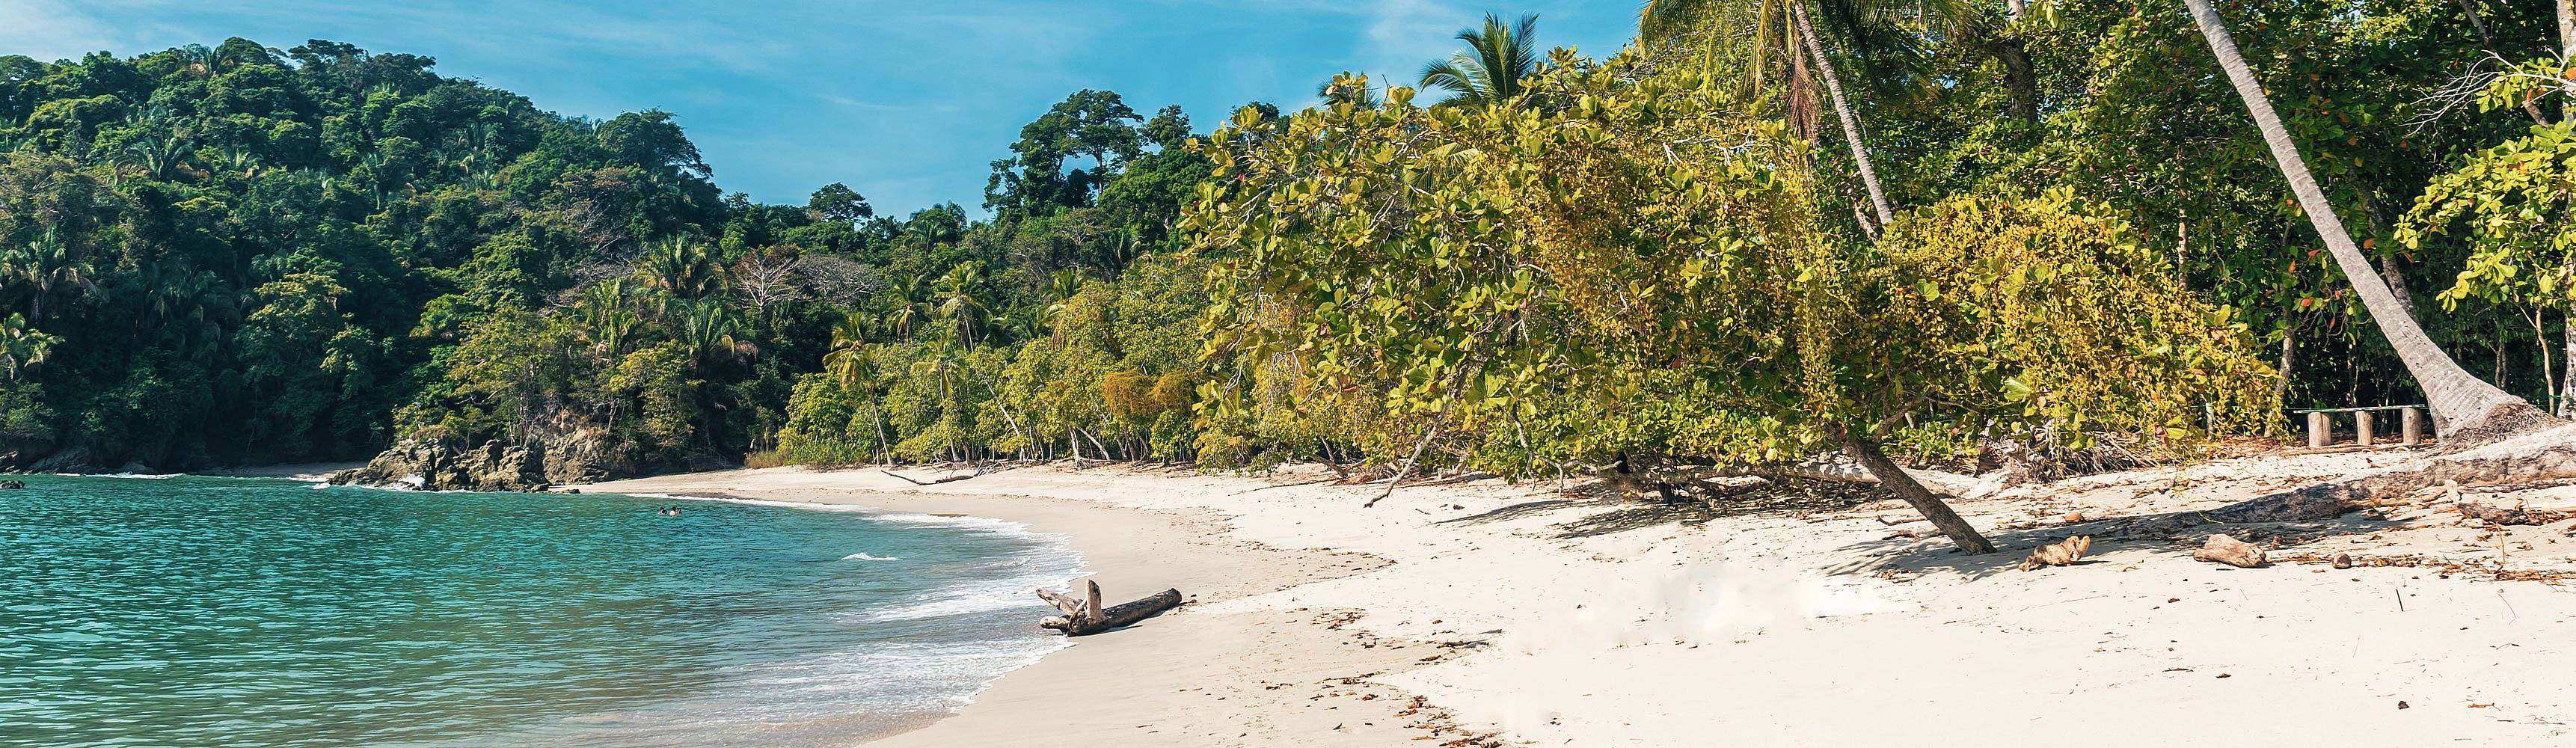 Strand und Meer Costa Rica Reisen